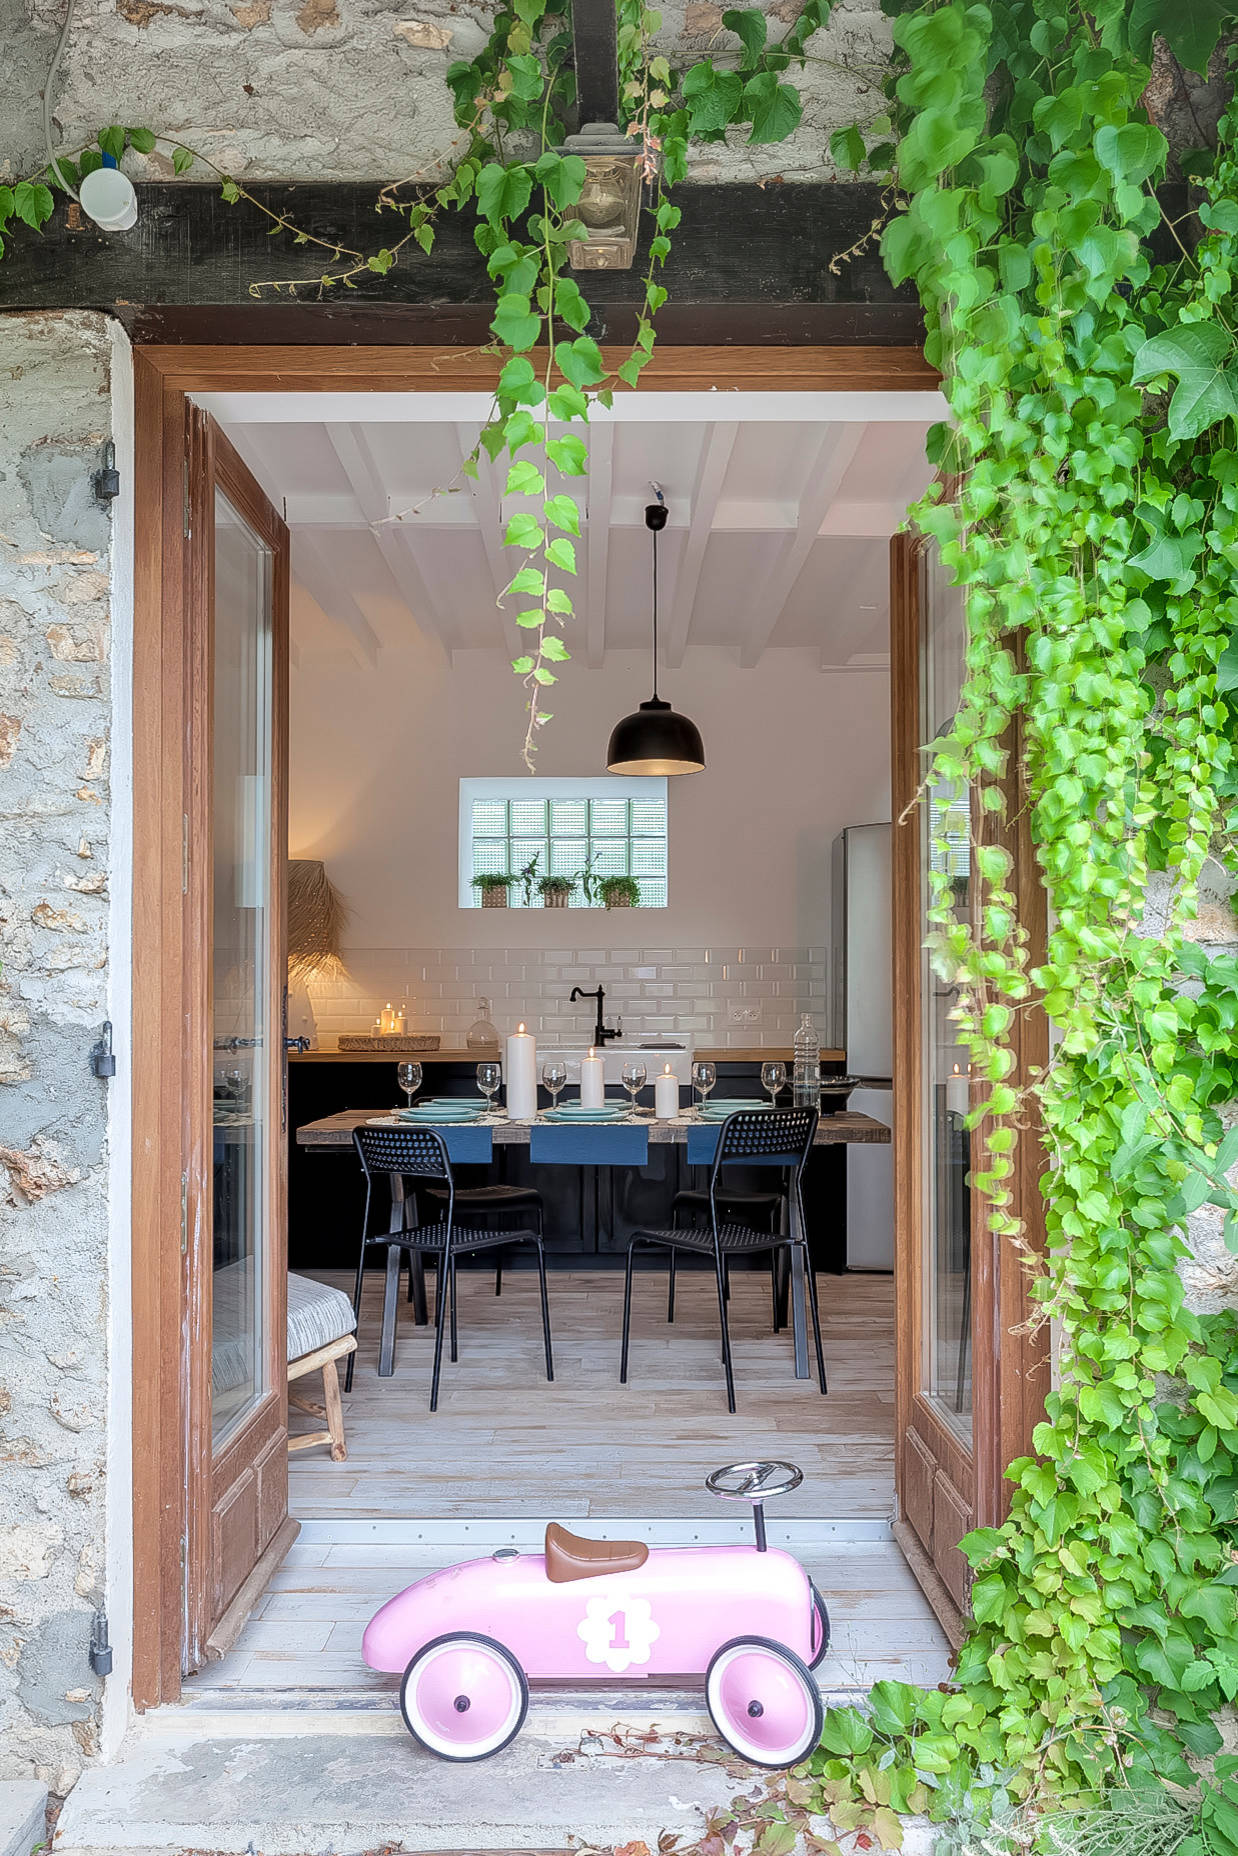 Rénovation complète d'une maison familiale de 135 m2 dans les Yvelines